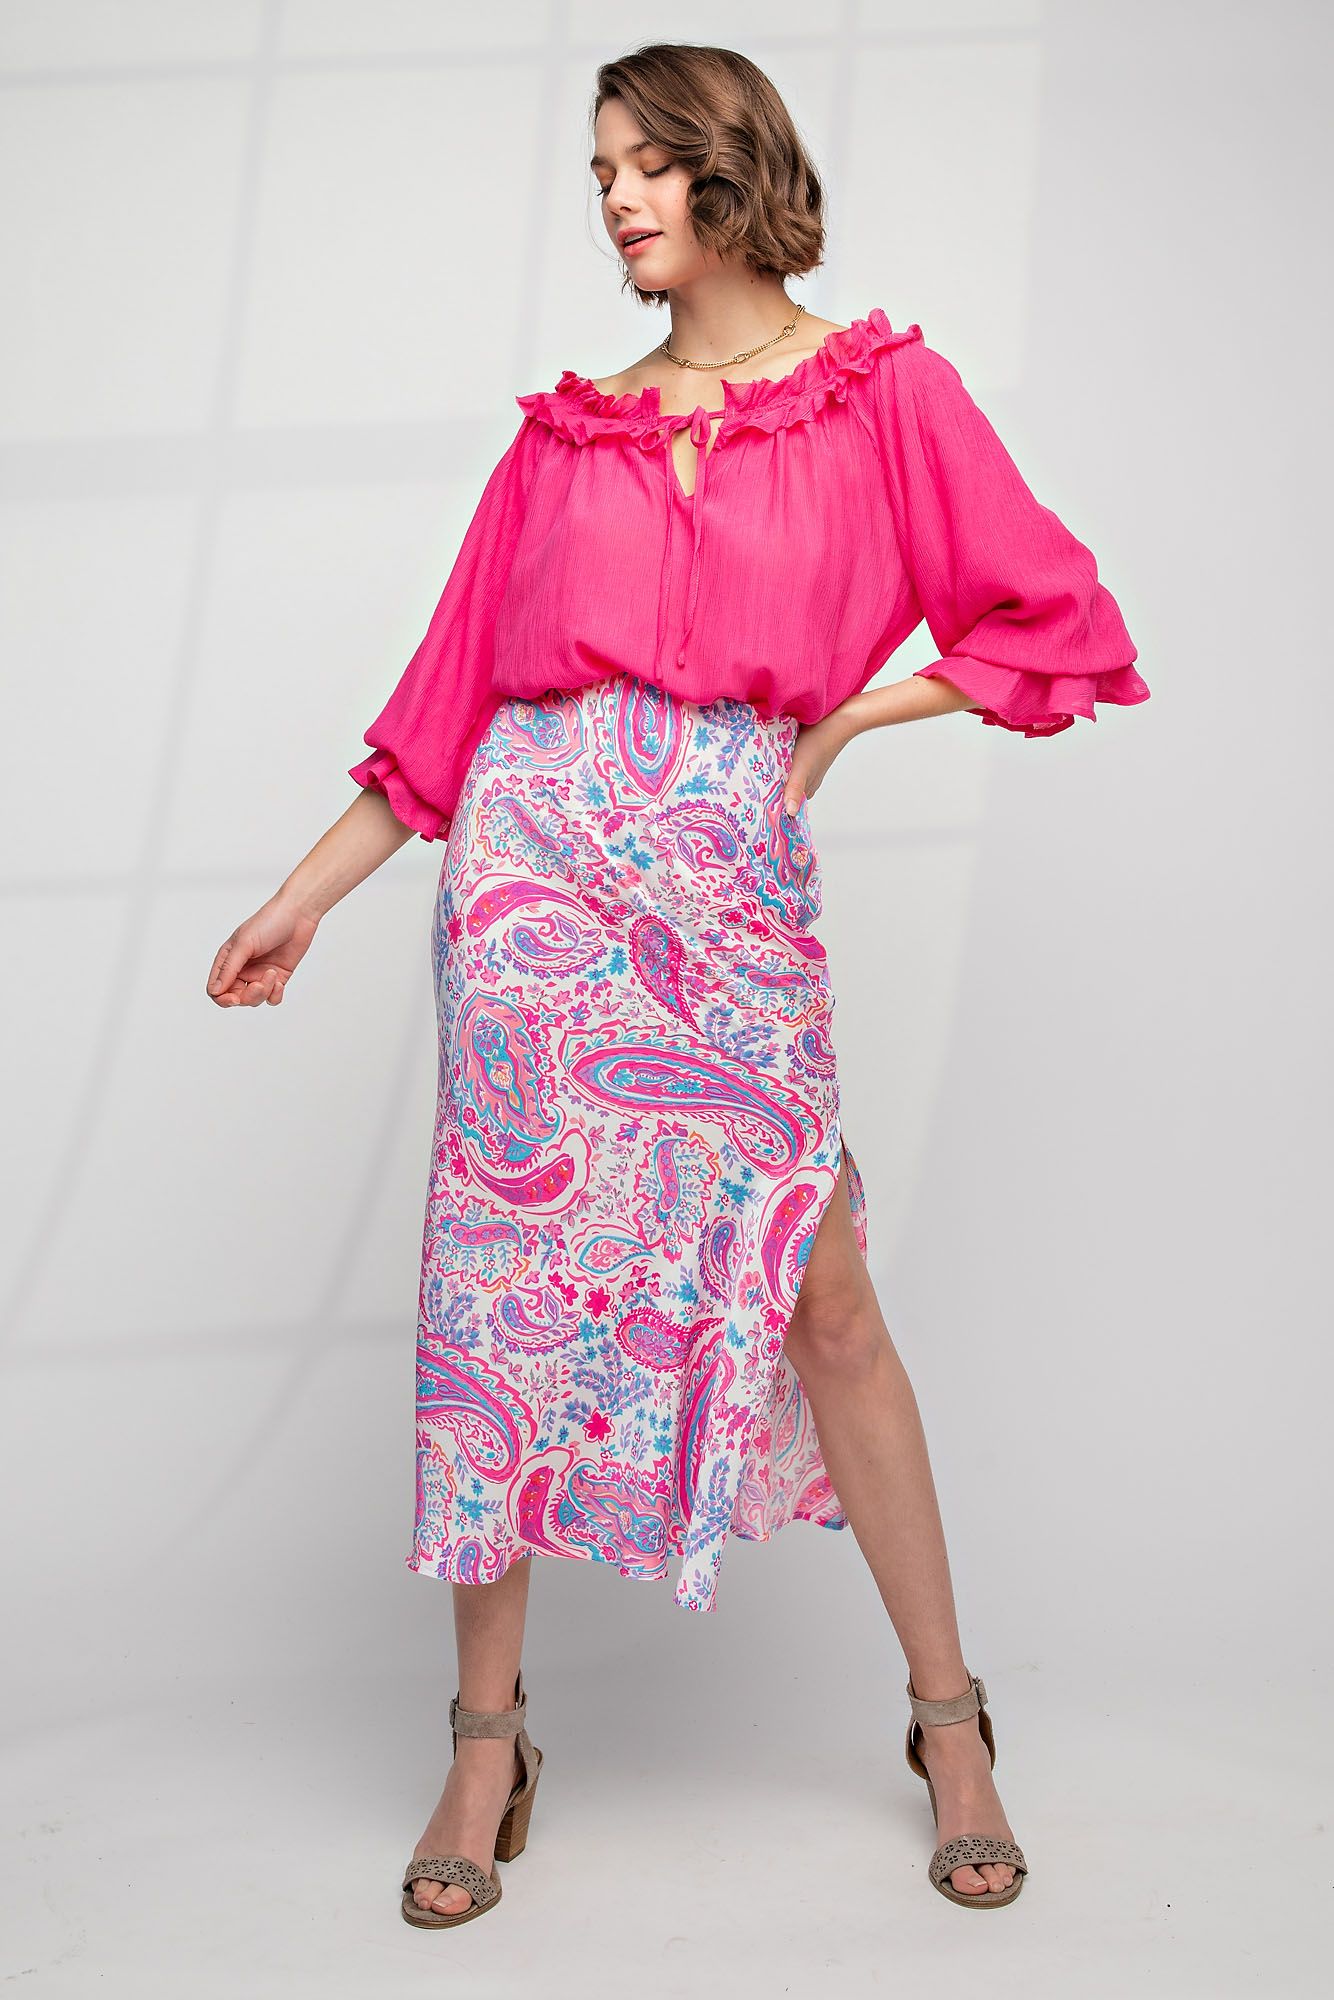 Paisley Pink Skirt